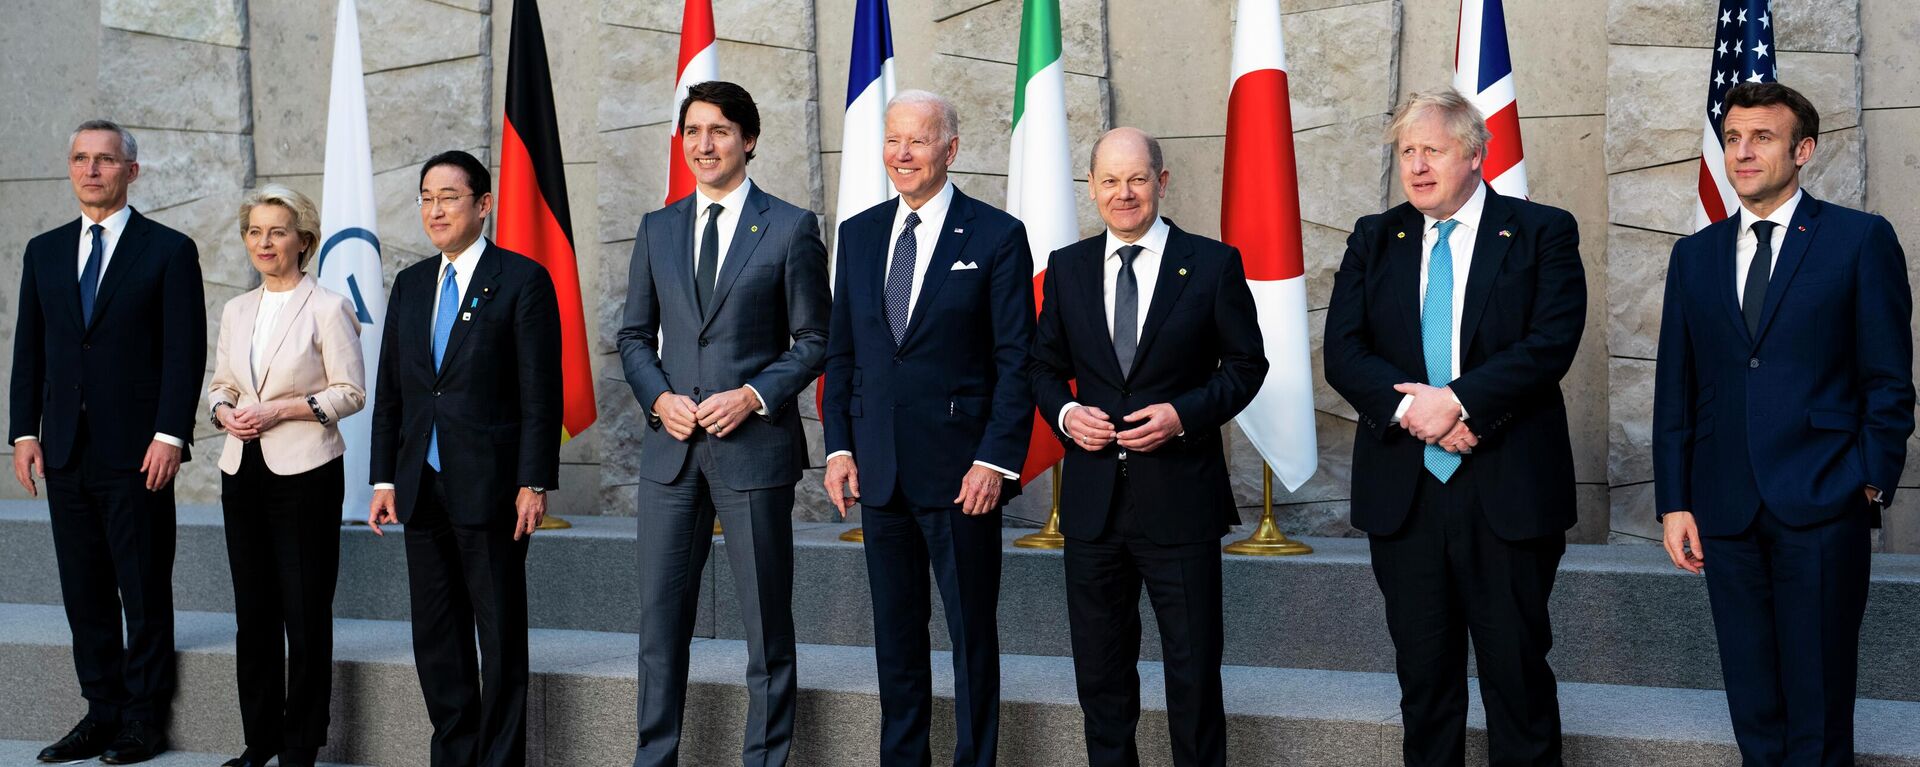 Da esquerda para a direita: o secretário-geral da OTAN, Jens Stoltenberg; a presidente da Comissão Europeia, Ursula von der Leyen; o primeiro-ministro do Japão, Fumio Kishida; o primeiro-ministro do Canadá, Justin Trudeau; o presidente dos EUA, Joe Biden; o chanceler da Alemanha, Olaf Scholz; o primeiro-ministro britânico, Boris Johnson; e o presidente da França, Emmanuel Macron. Os representantes posam para uma foto de grupo dos líderes do G7 durante cúpula da OTAN, em Bruxelas, Bélgica, 24 de março de 2022 - Sputnik Brasil, 1920, 01.09.2022